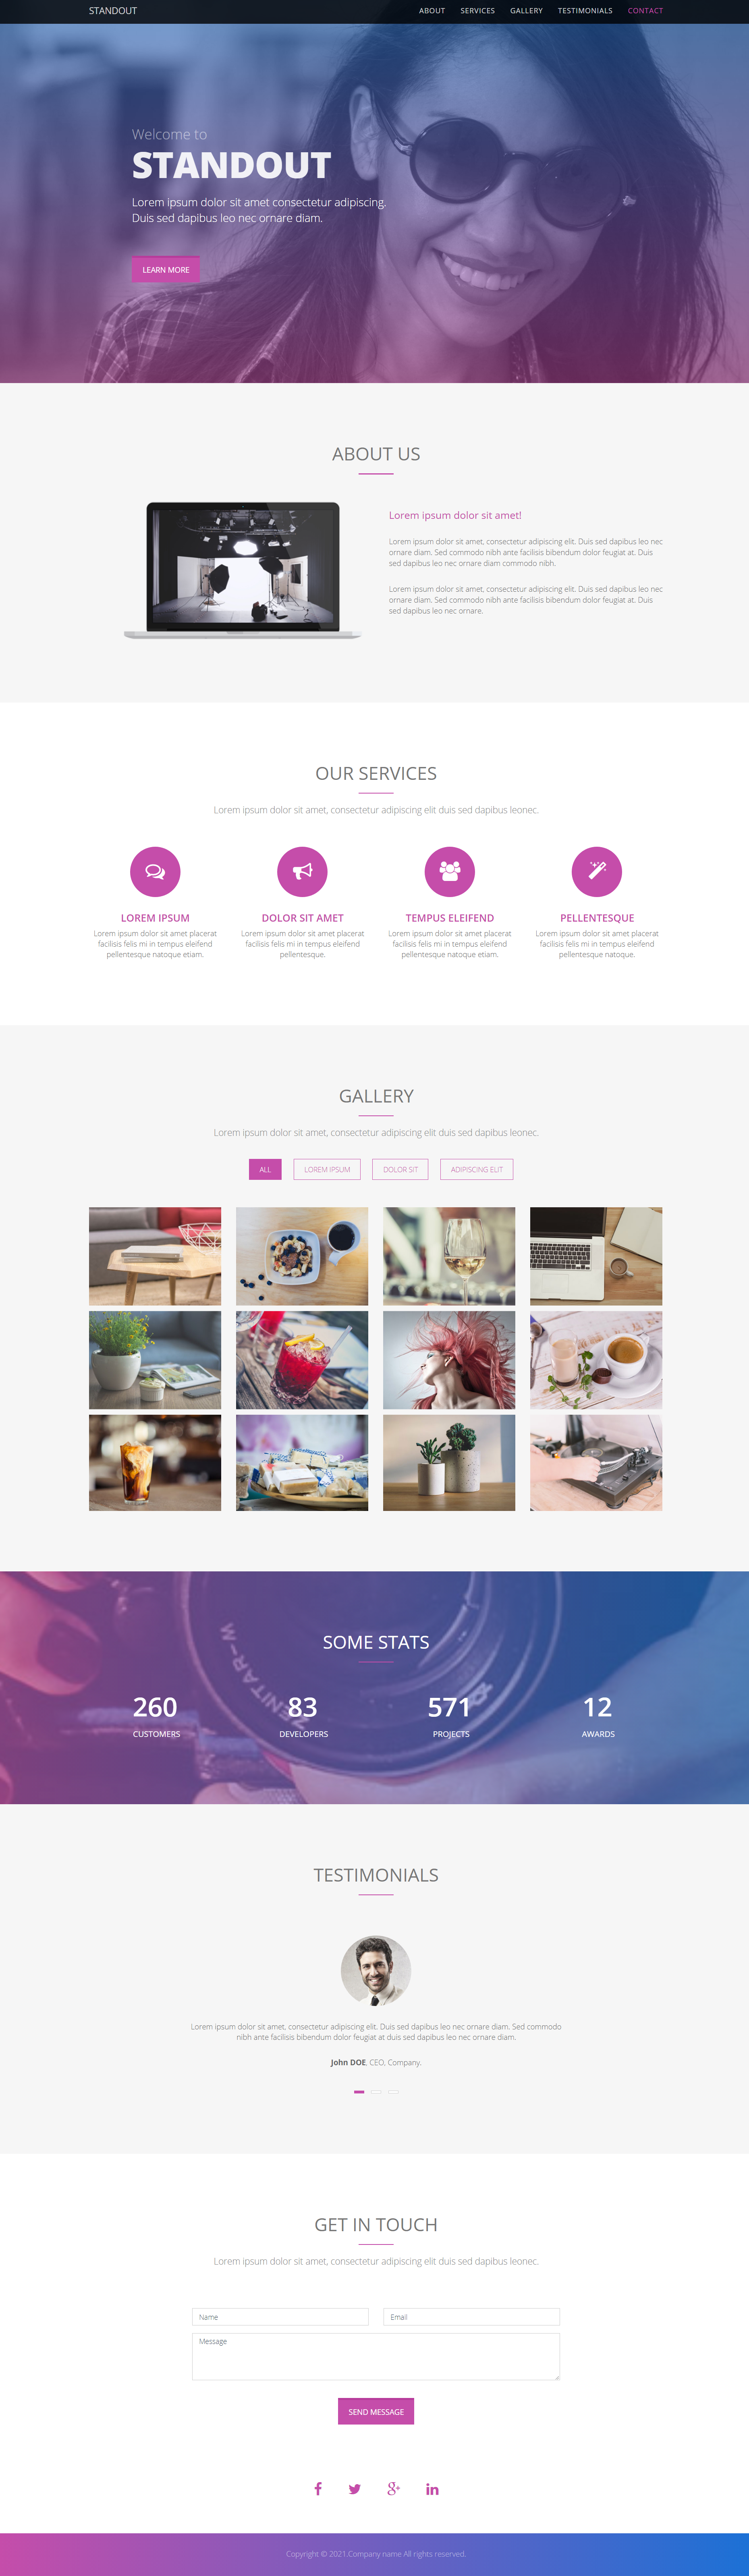 HTML5紫色大气样式专业摄影企业网站模板代码下载